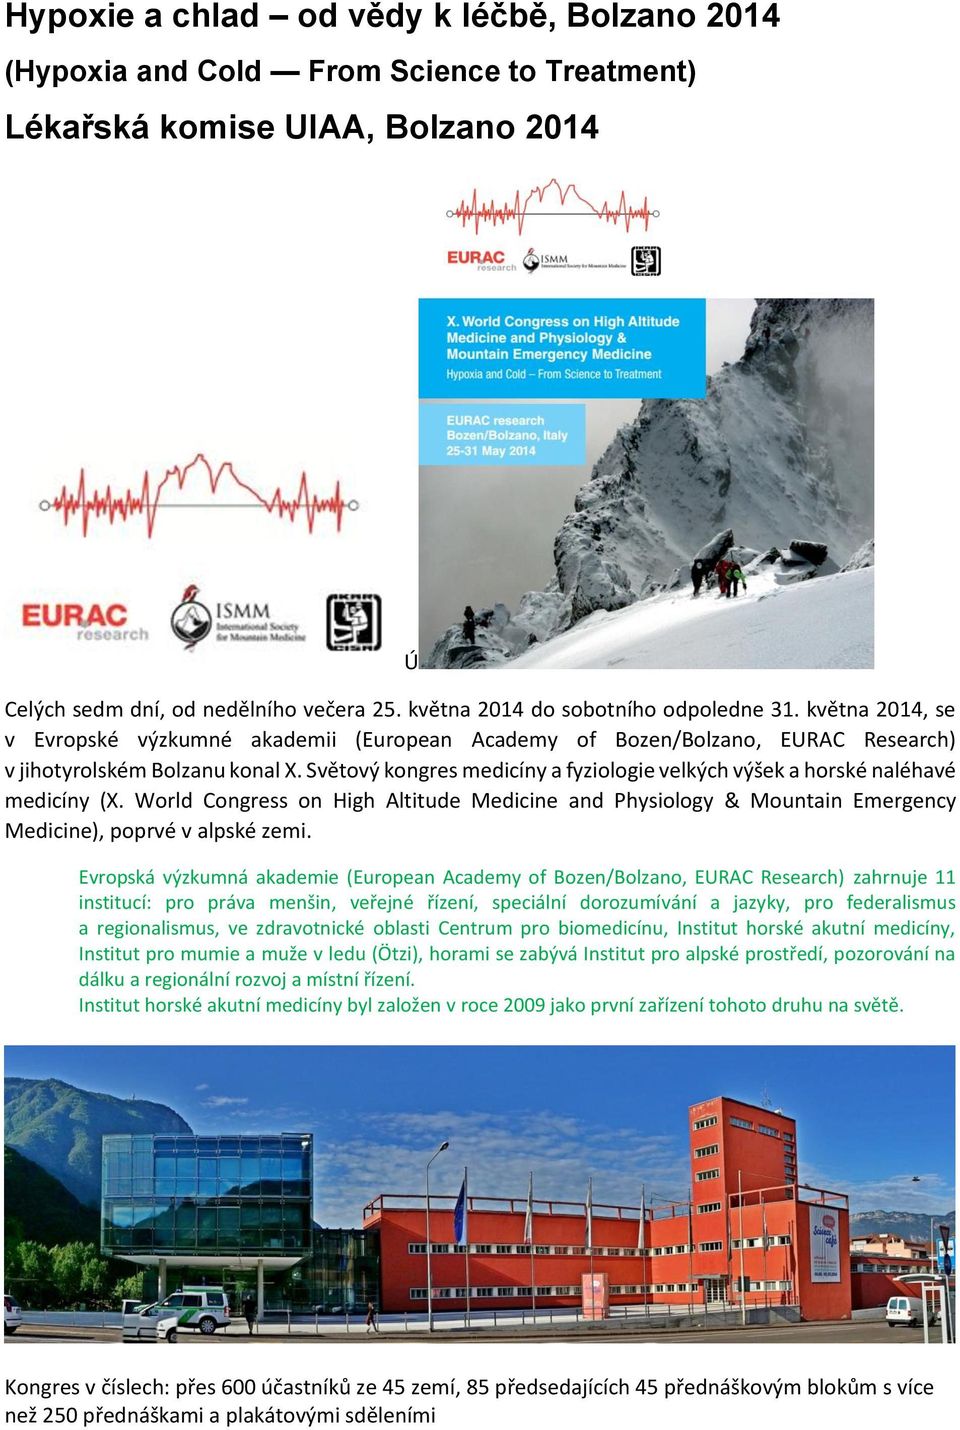 Světový kongres medicíny a fyziologie velkých výšek a horské naléhavé medicíny (X. World Congress on High Altitude Medicine and Physiology & Mountain Emergency Medicine), poprvé v alpské zemi.